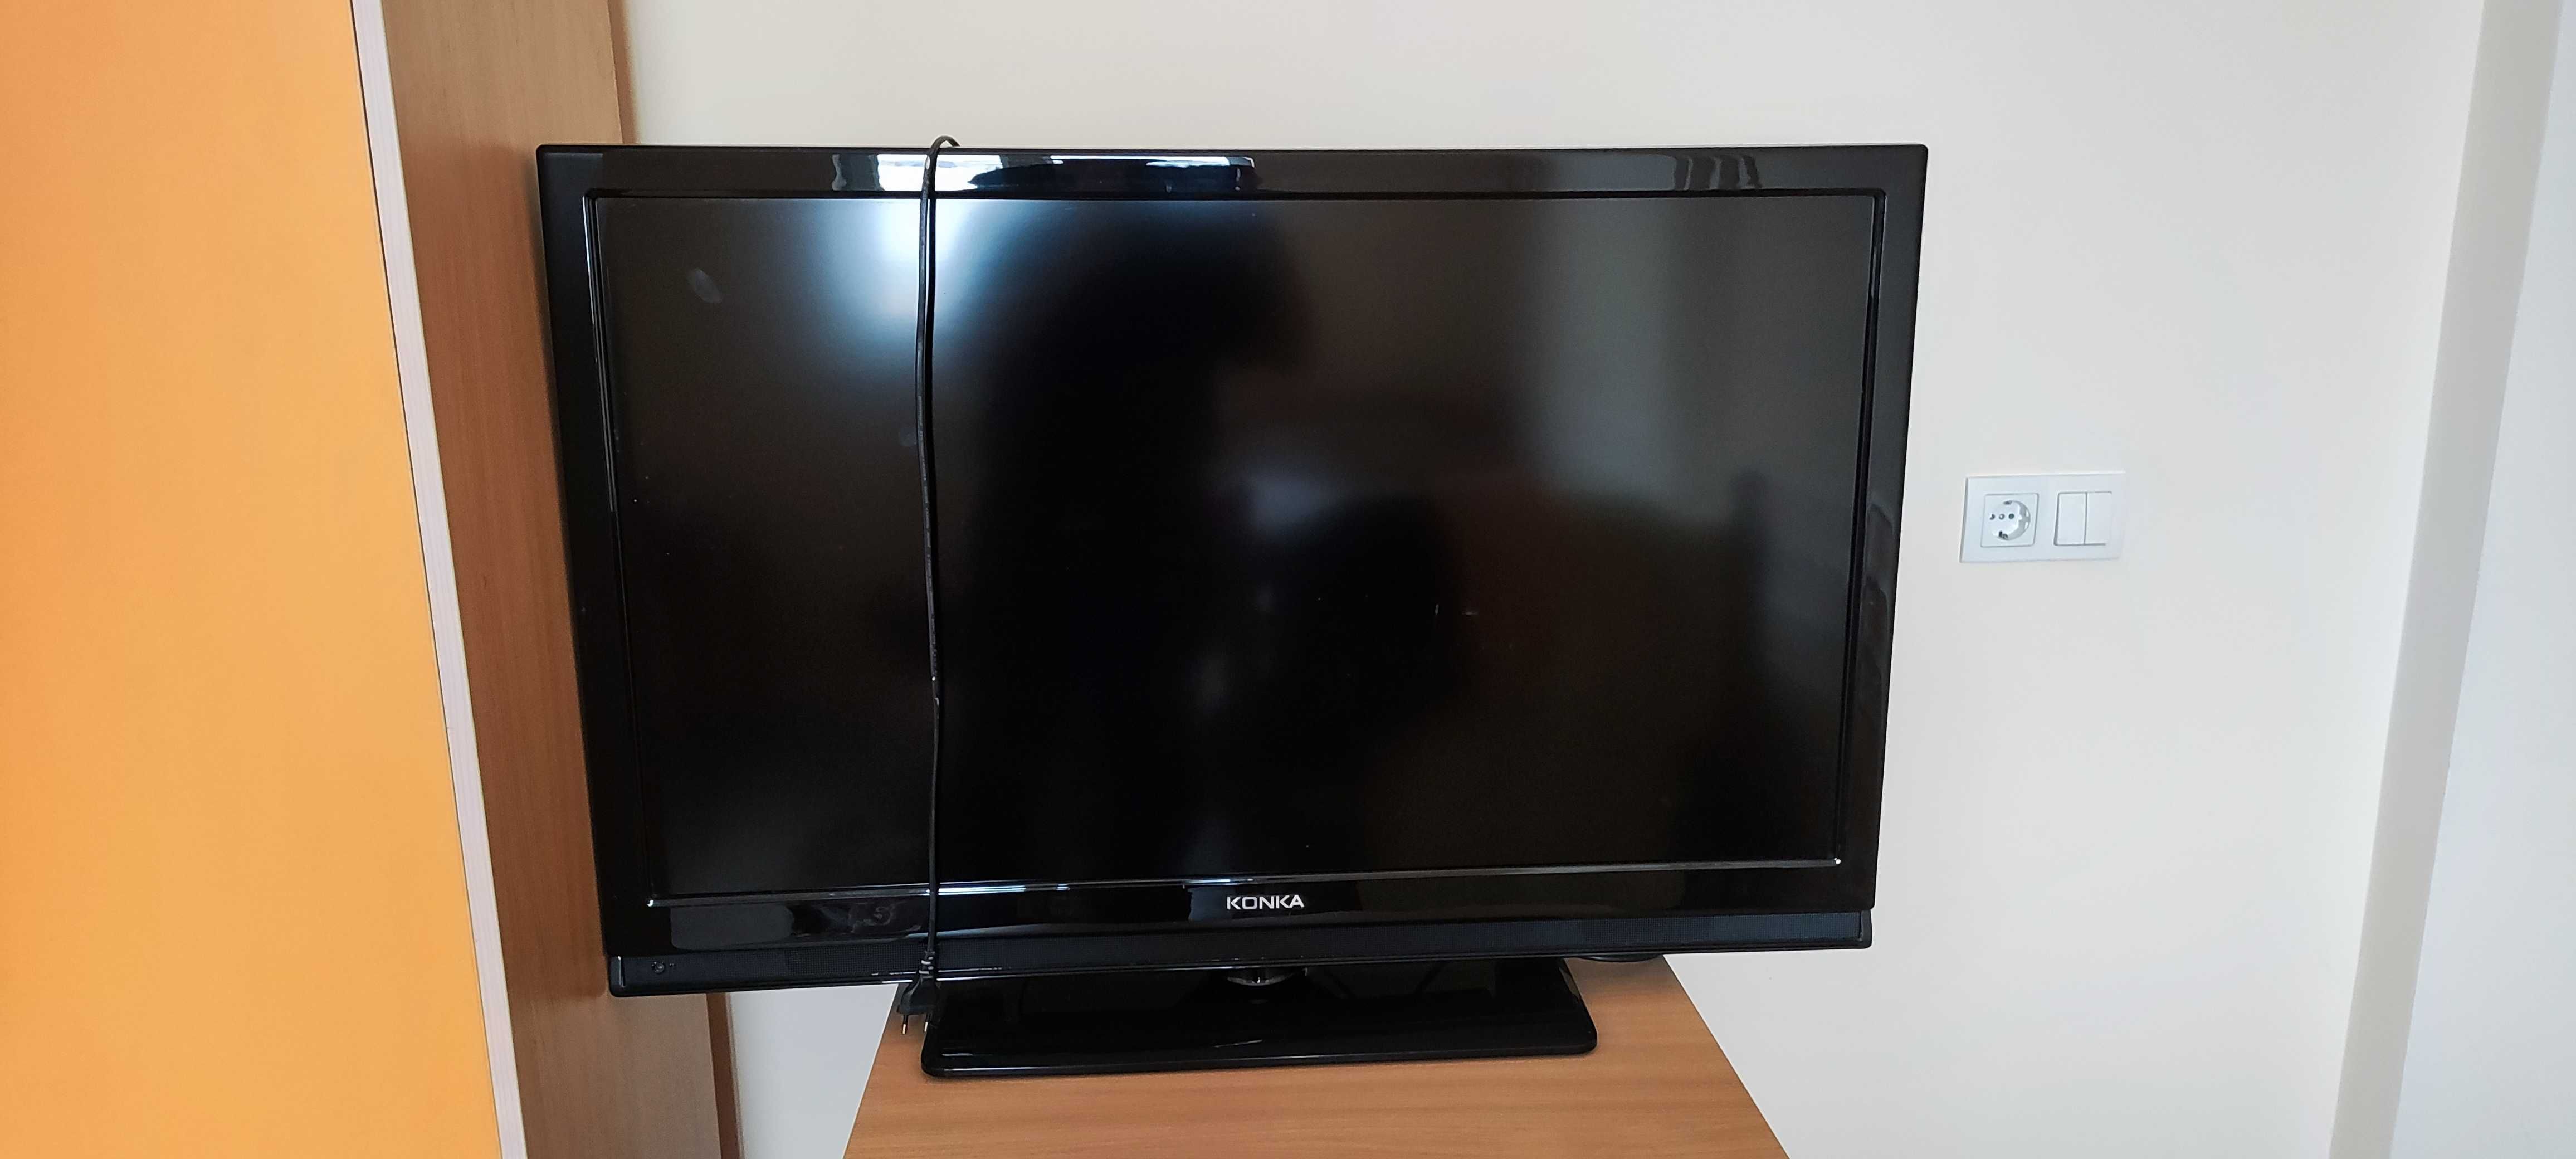 Продам Телевизор Konka “43” (109cm). Состояние хорошее